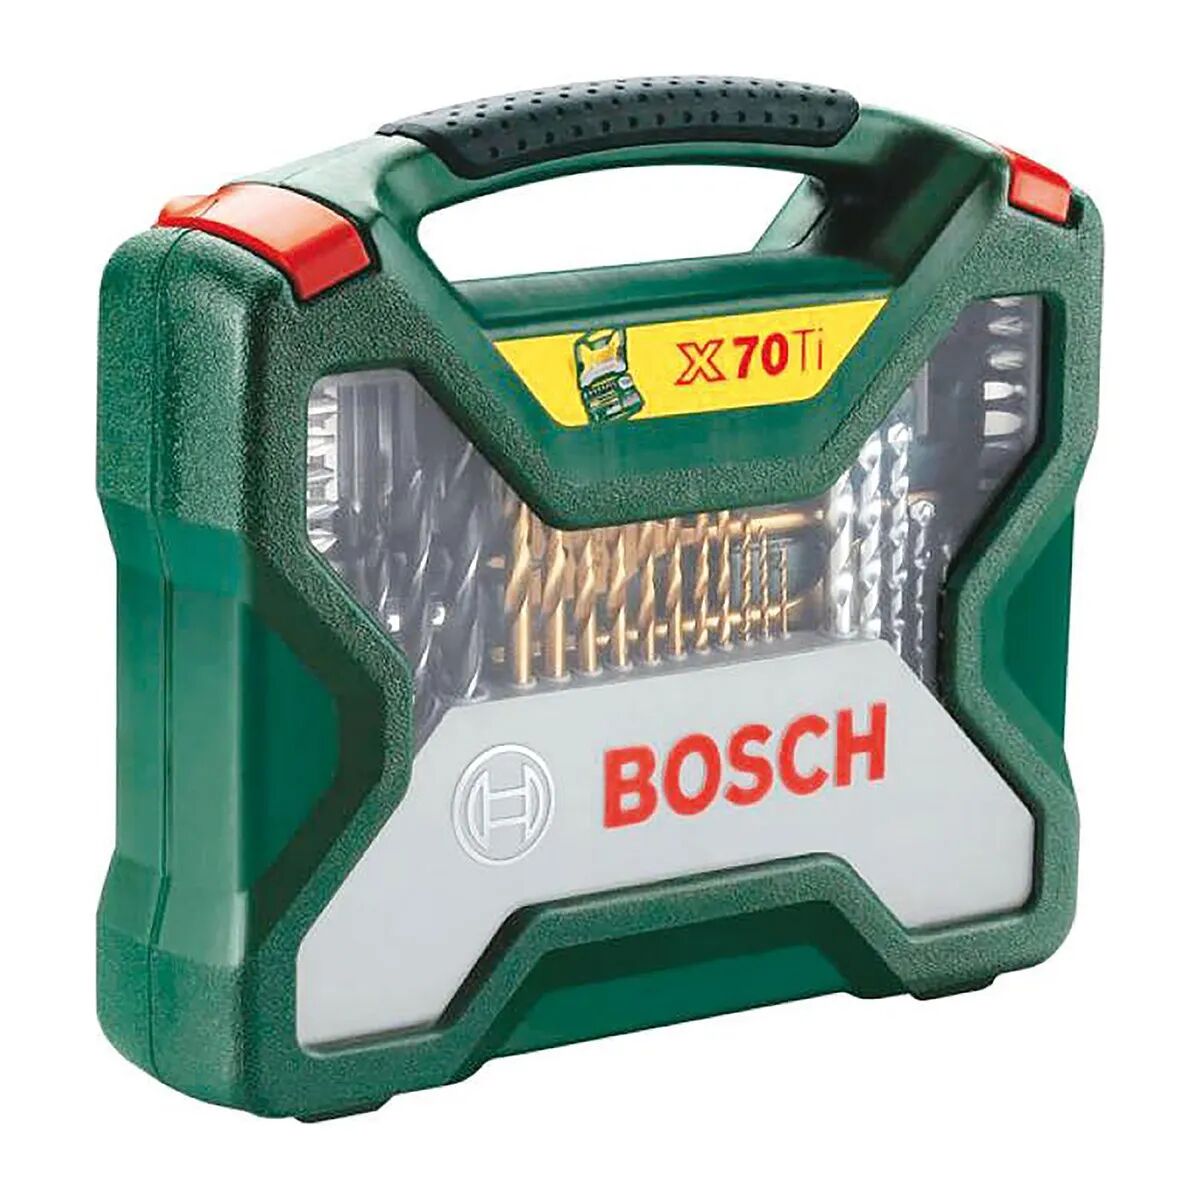 Bosch Valigetta 70 Pezzi  X70ti Per Foratura E Avvitatura